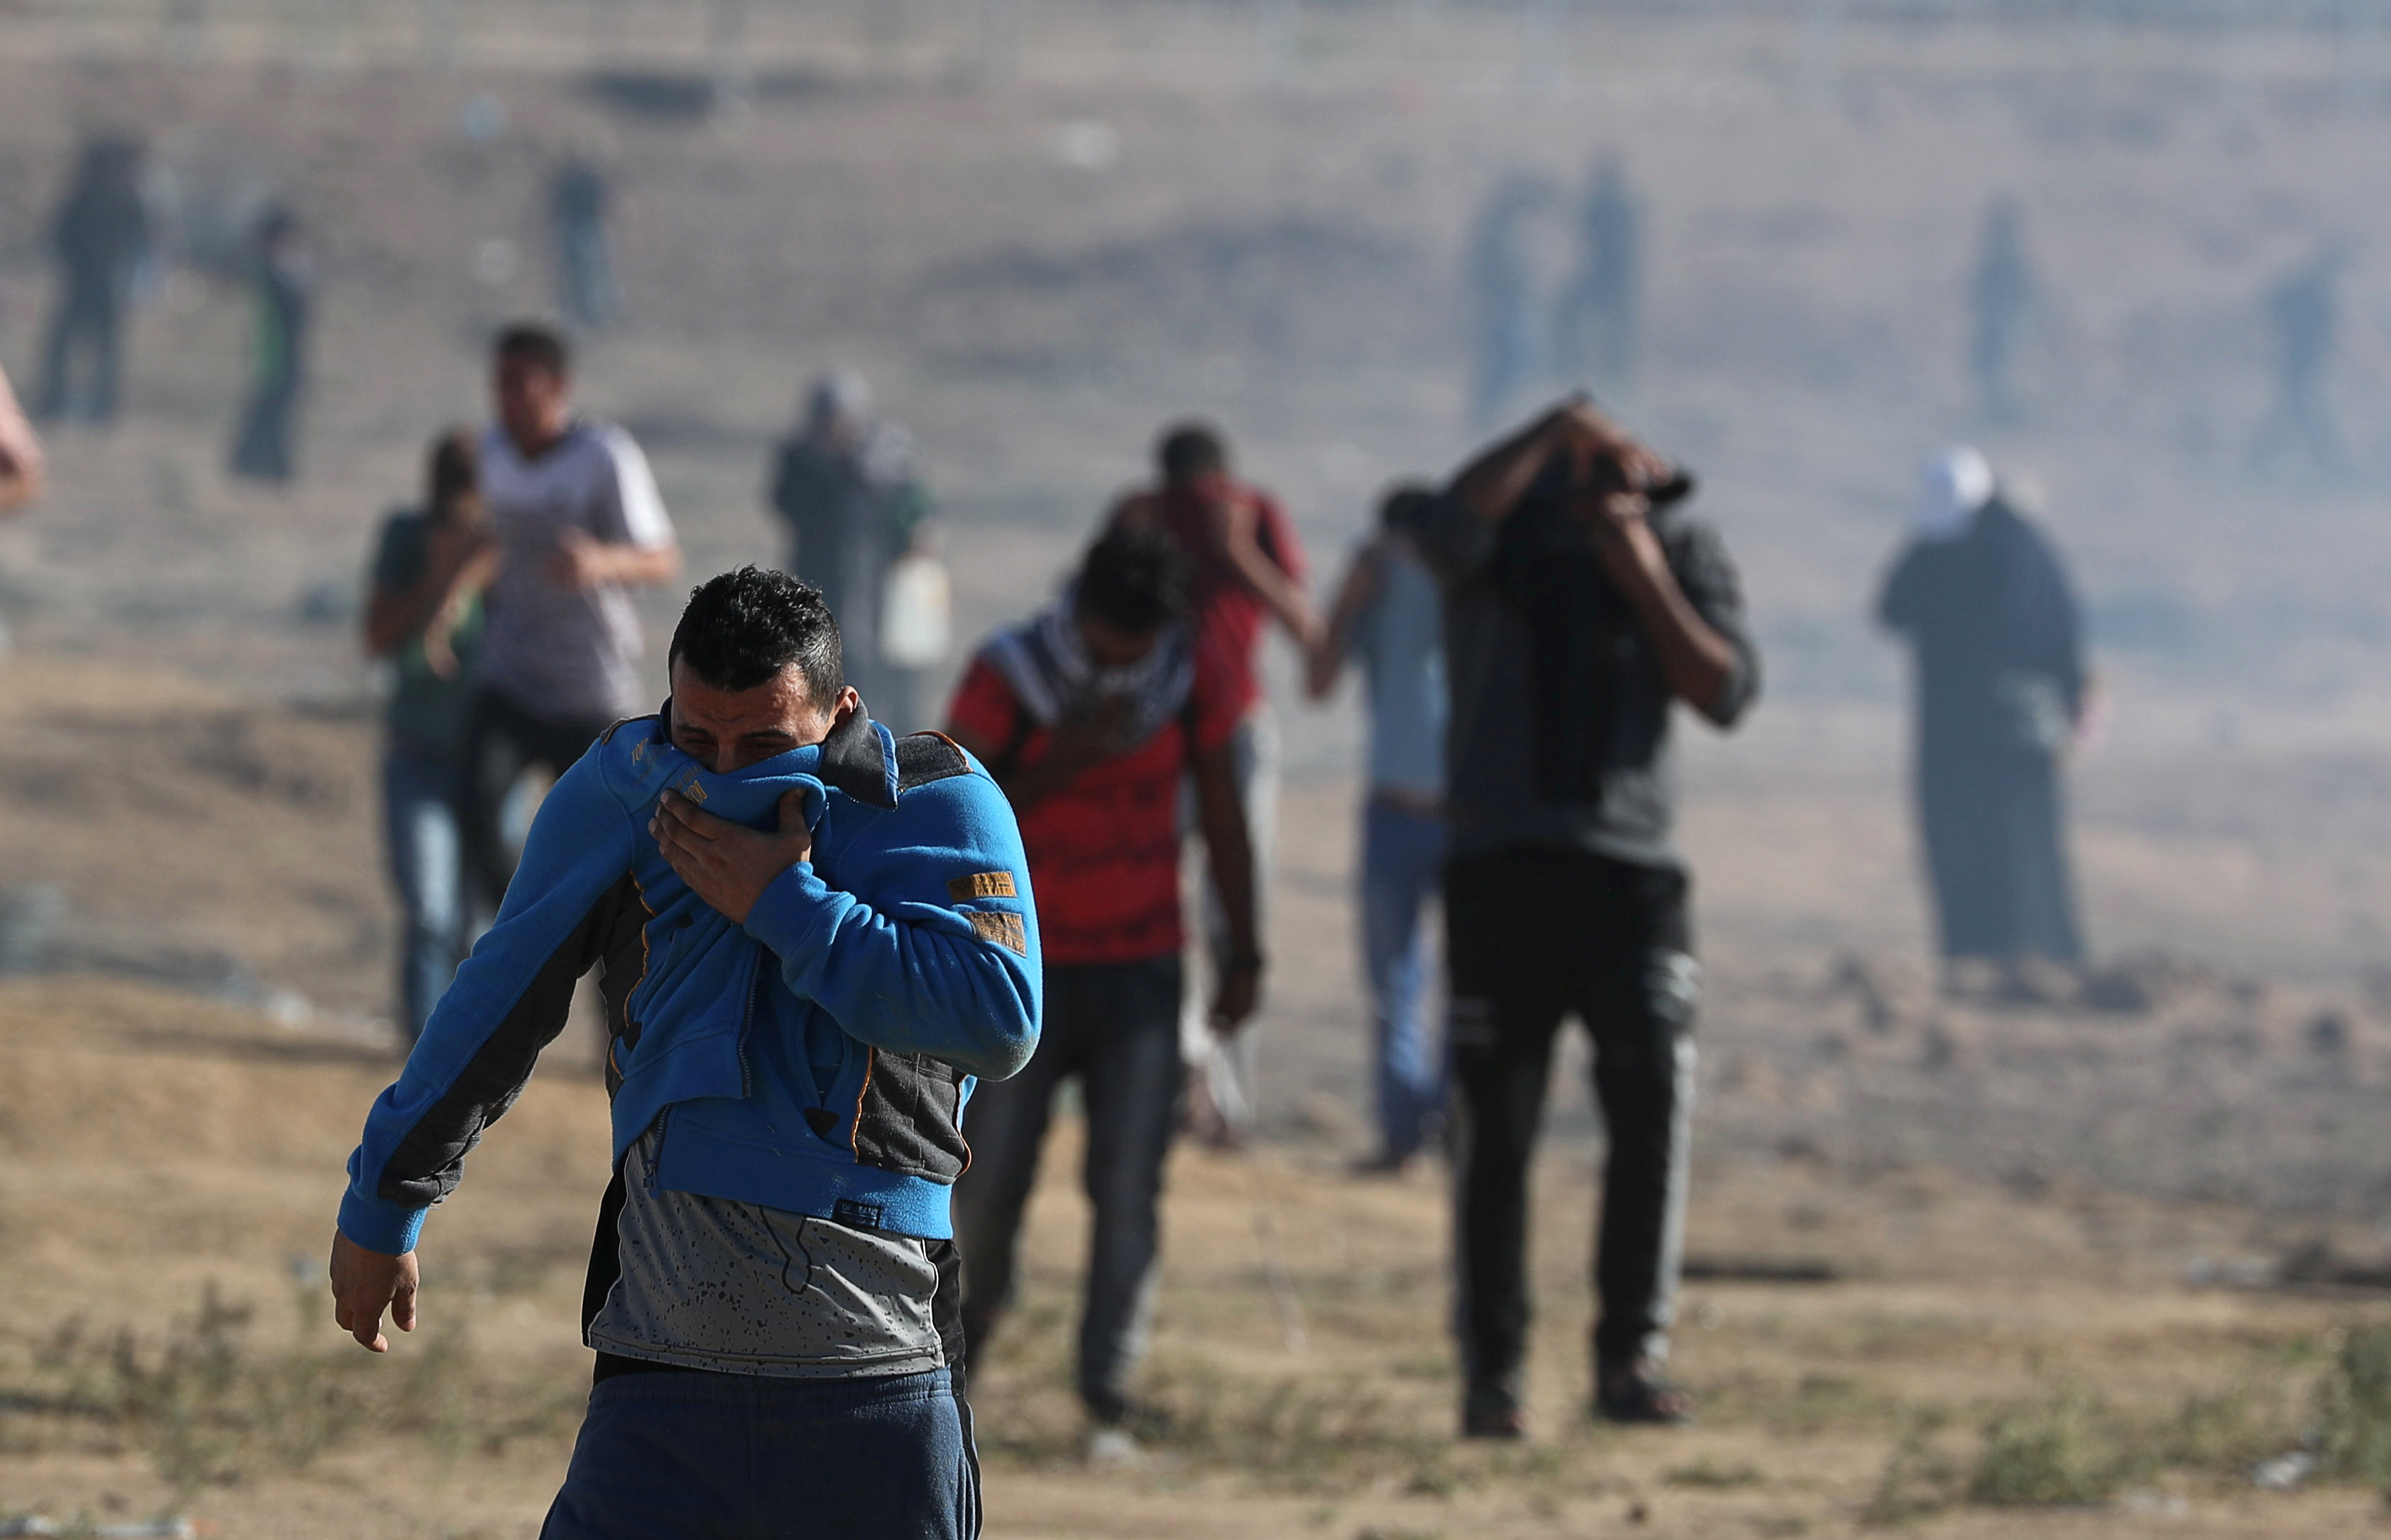 فلسطينيون يحاولون الابتعاد عن قنابل الغاز المسيل للدموع الذي أطلقه جيش الاحتلال الإسرائيلي على قطاع غزة، 2 نوفمبر 2018. محمد سالم/ رويترز 